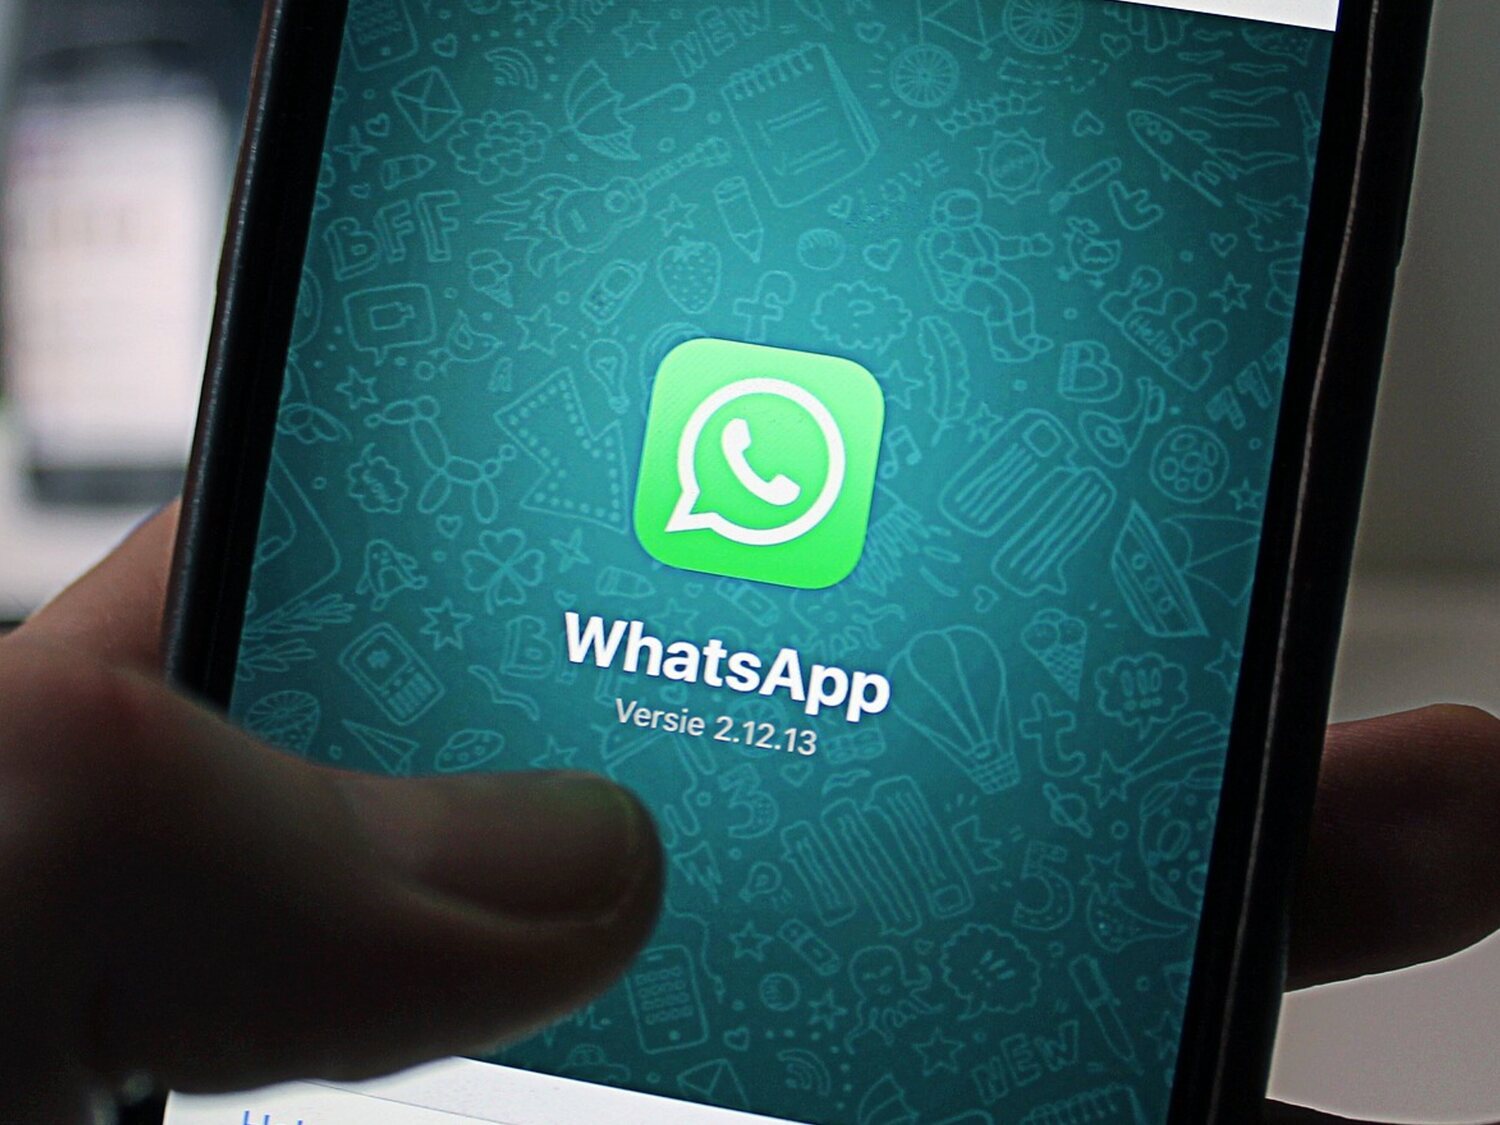 WhatsApp alerta de dos vulnerabilidades: el motivo por el que tienes que actualizar cuanto antes si no quieres riesgos